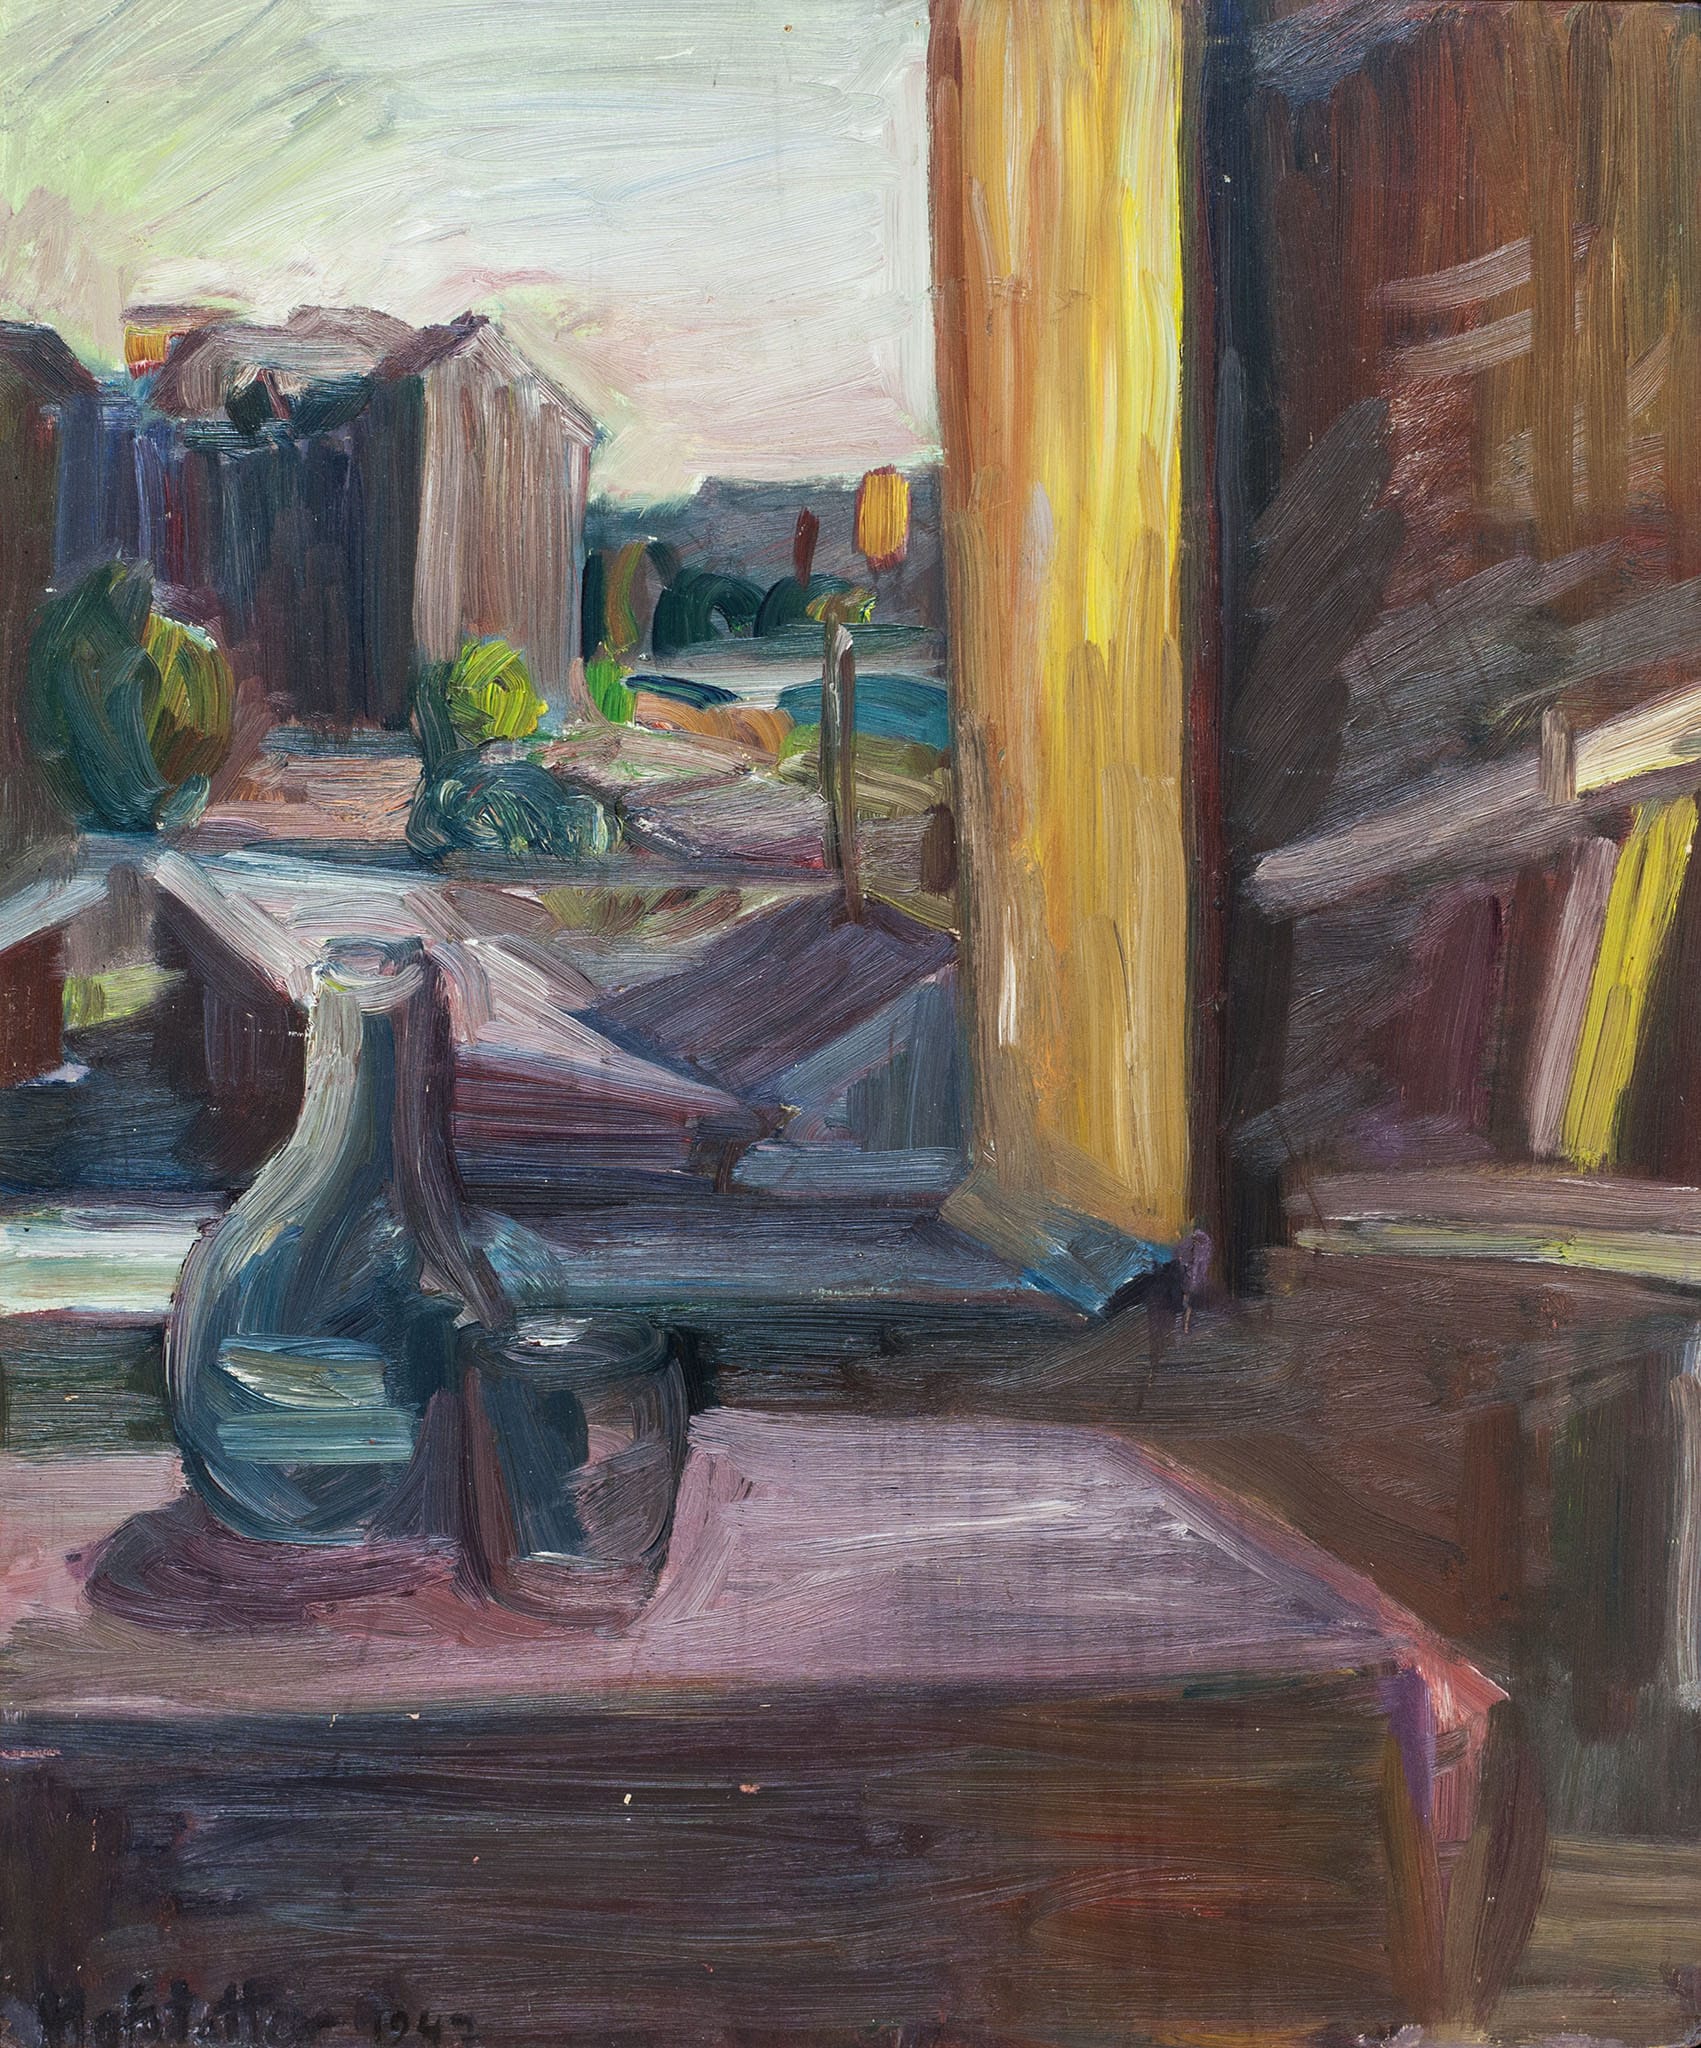 אוזיאש הופשטטר, "נוף מן החלון", 1947, שמן על עץ, 54x65 ס"מ